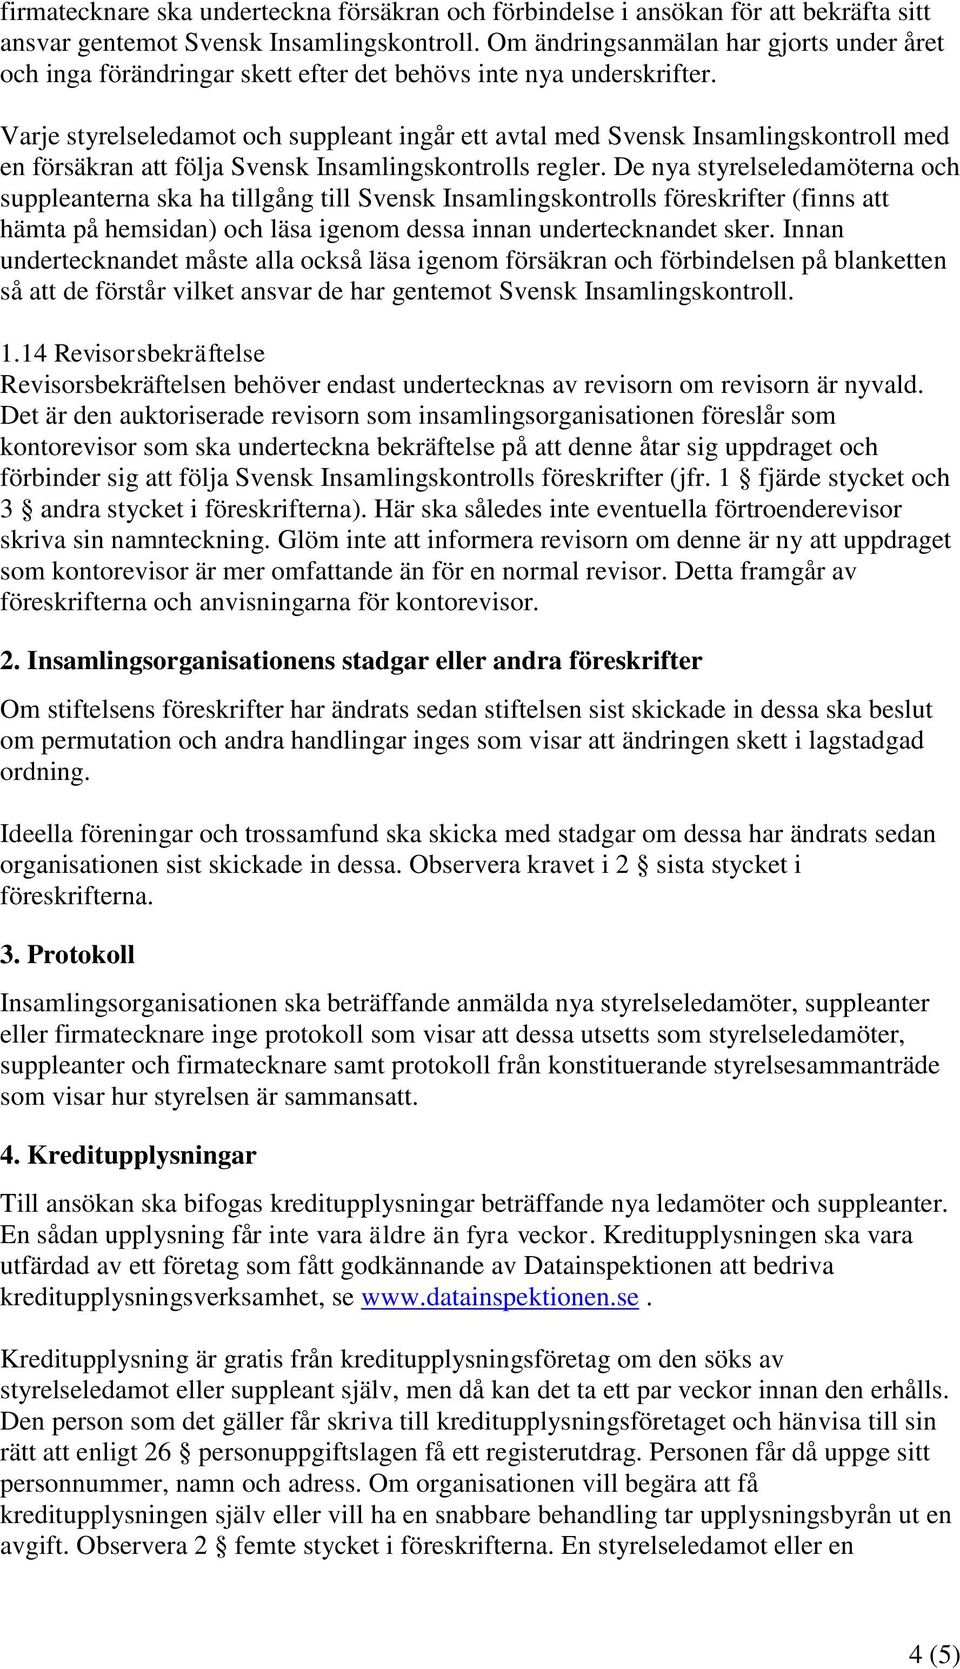 Varje styrelseledamot och suppleant ingår ett avtal med Svensk Insamlingskontroll med en försäkran att följa Svensk Insamlingskontrolls regler.